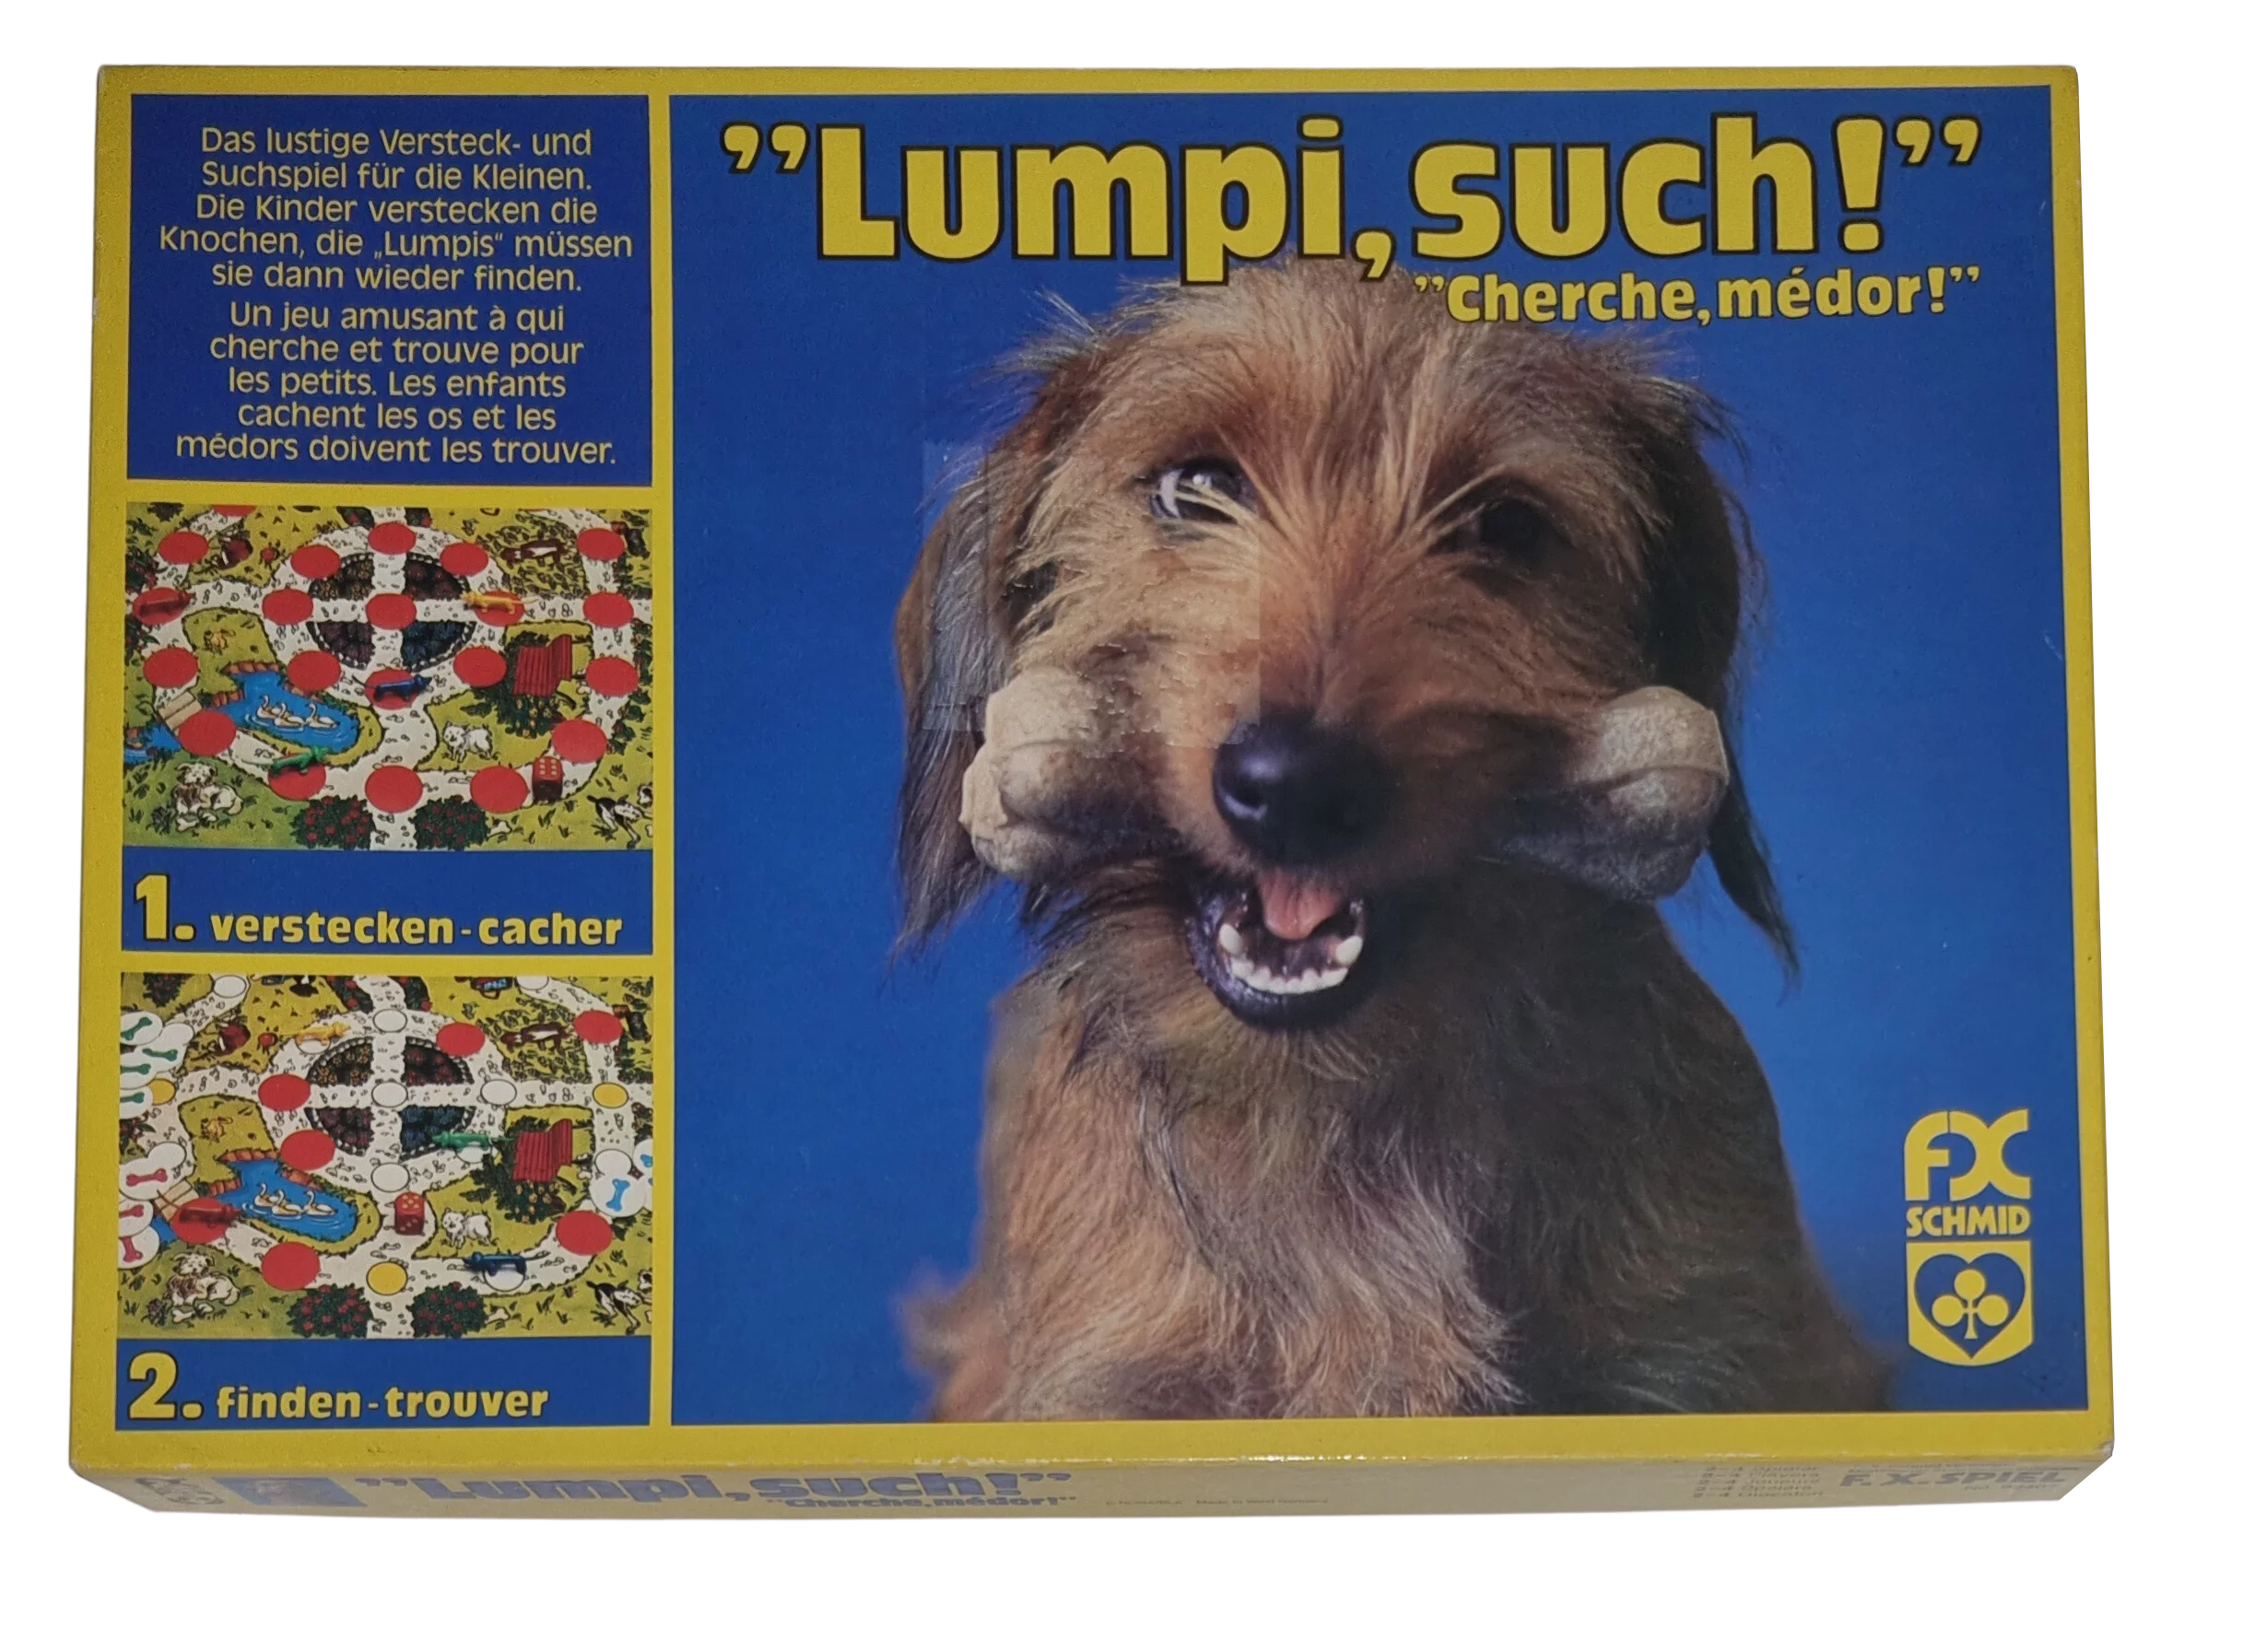 FX Schmid Lumpi, such! 92407